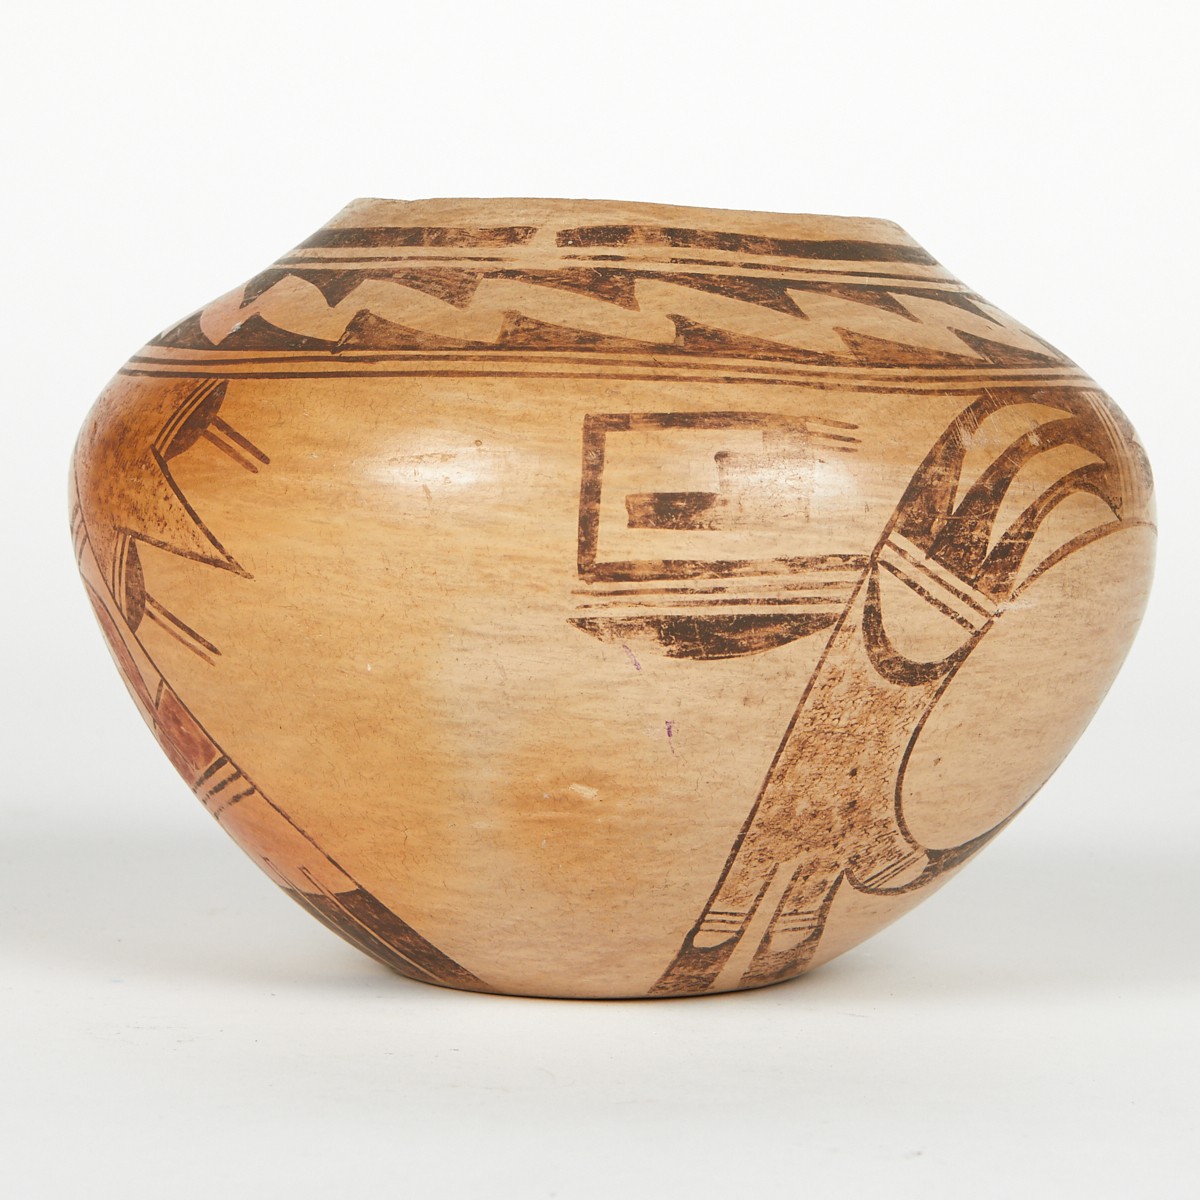 Poss. Nampeyo Family Hopi Ceramic Pot - Image 3 of 6